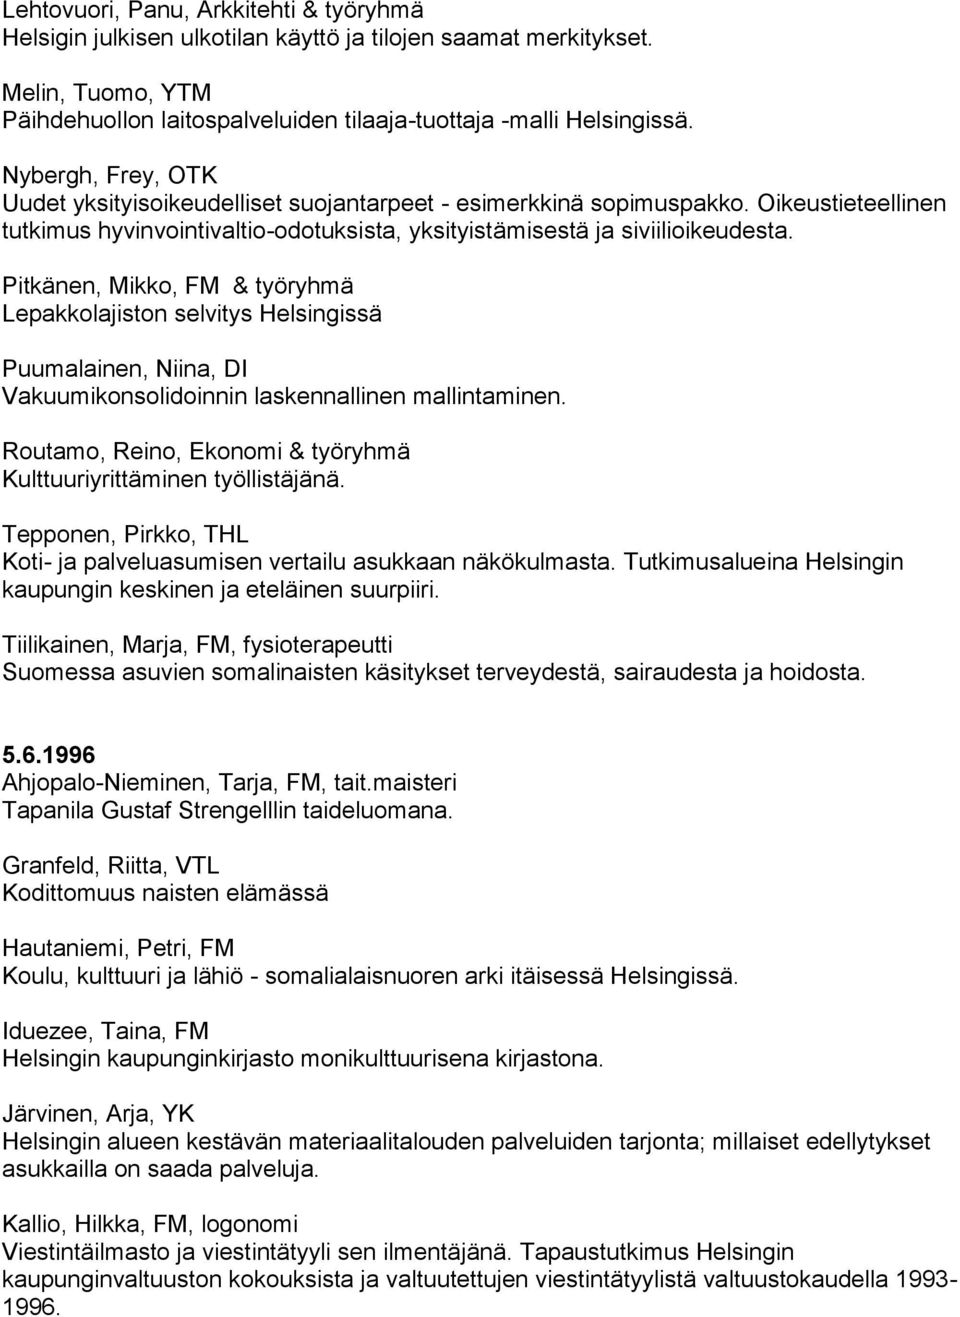 Pitkänen, Mikko, FM & työryhmä Lepakkolajiston selvitys Helsingissä Puumalainen, Niina, DI Vakuumikonsolidoinnin laskennallinen mallintaminen.